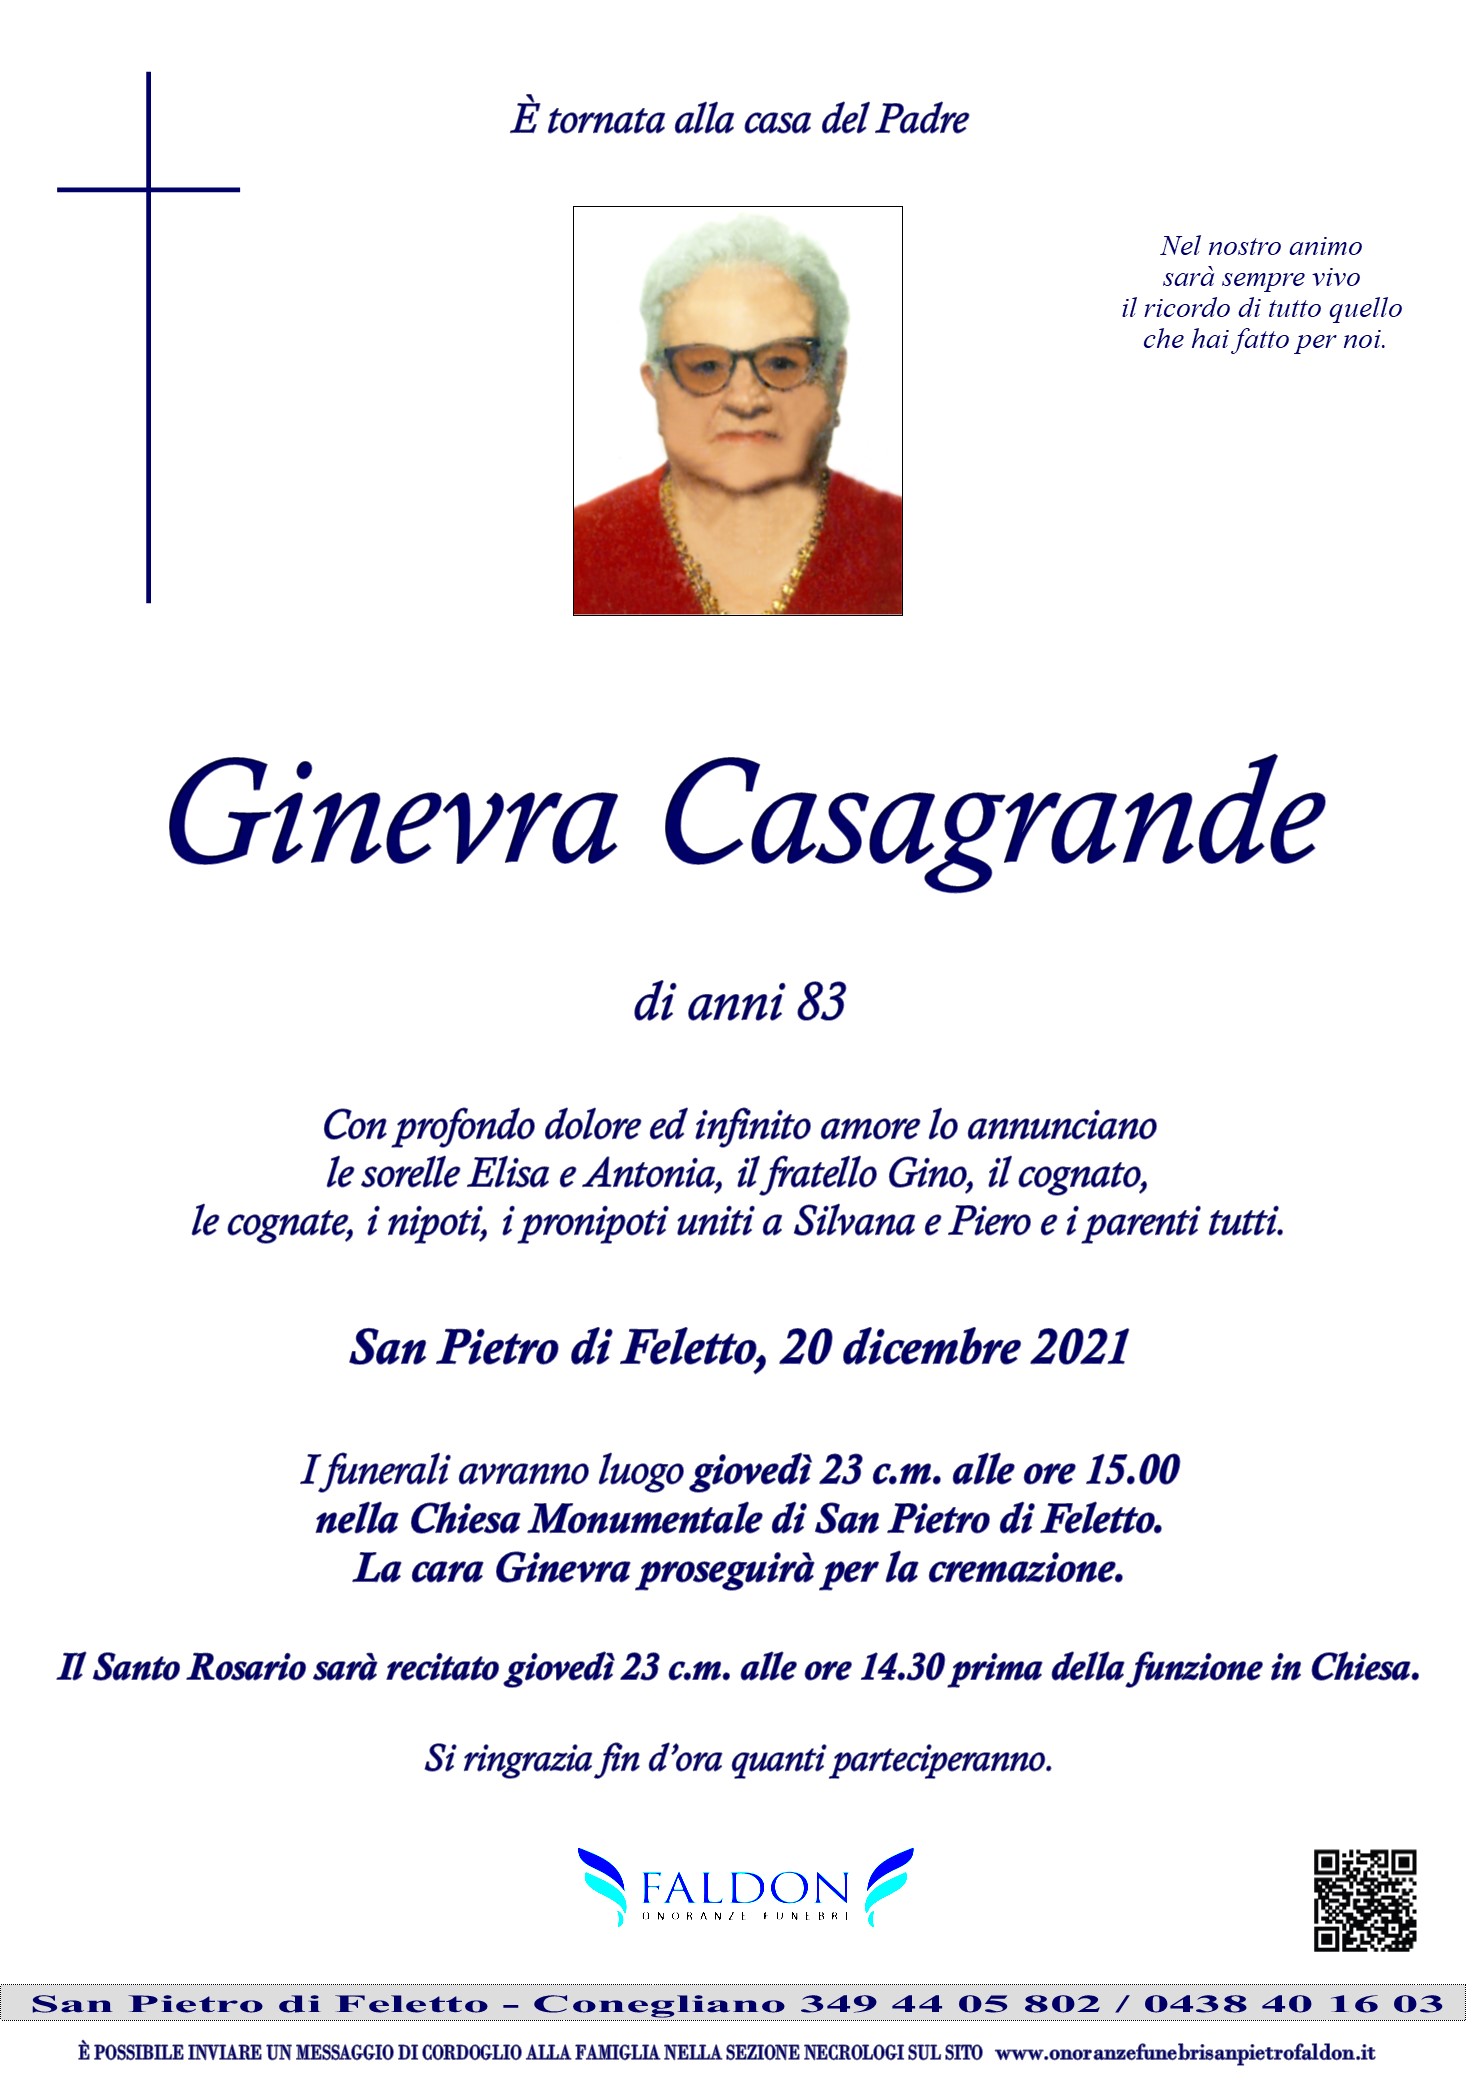 Ginevra Casagrande